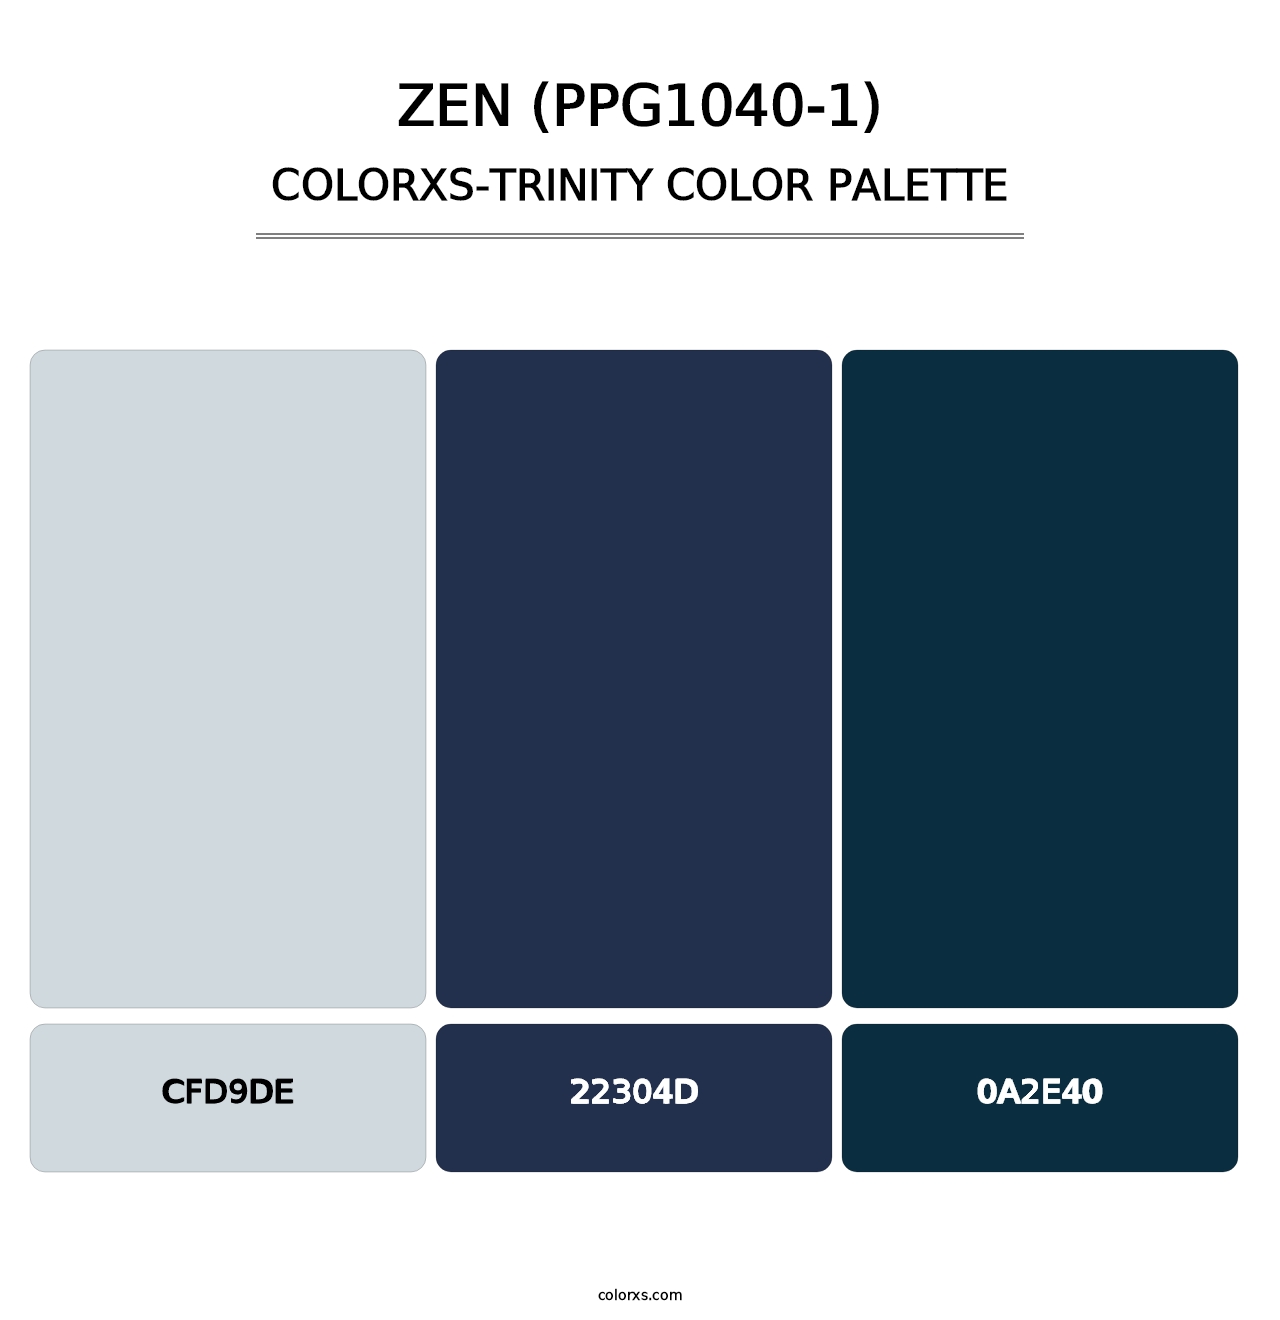 Zen (PPG1040-1) - Colorxs Trinity Palette